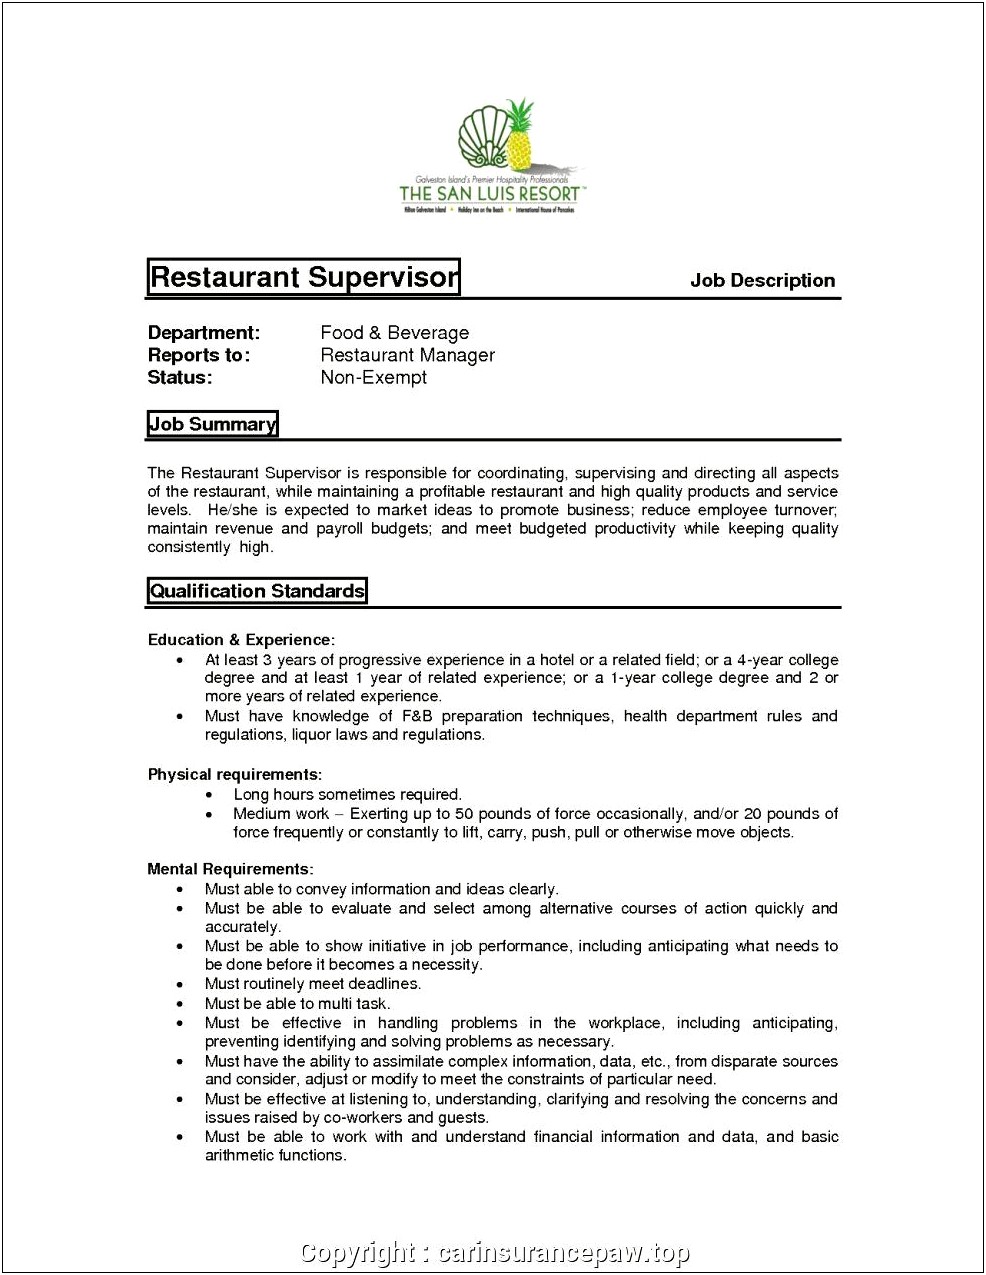 Food Service Manager Job Description For Resume